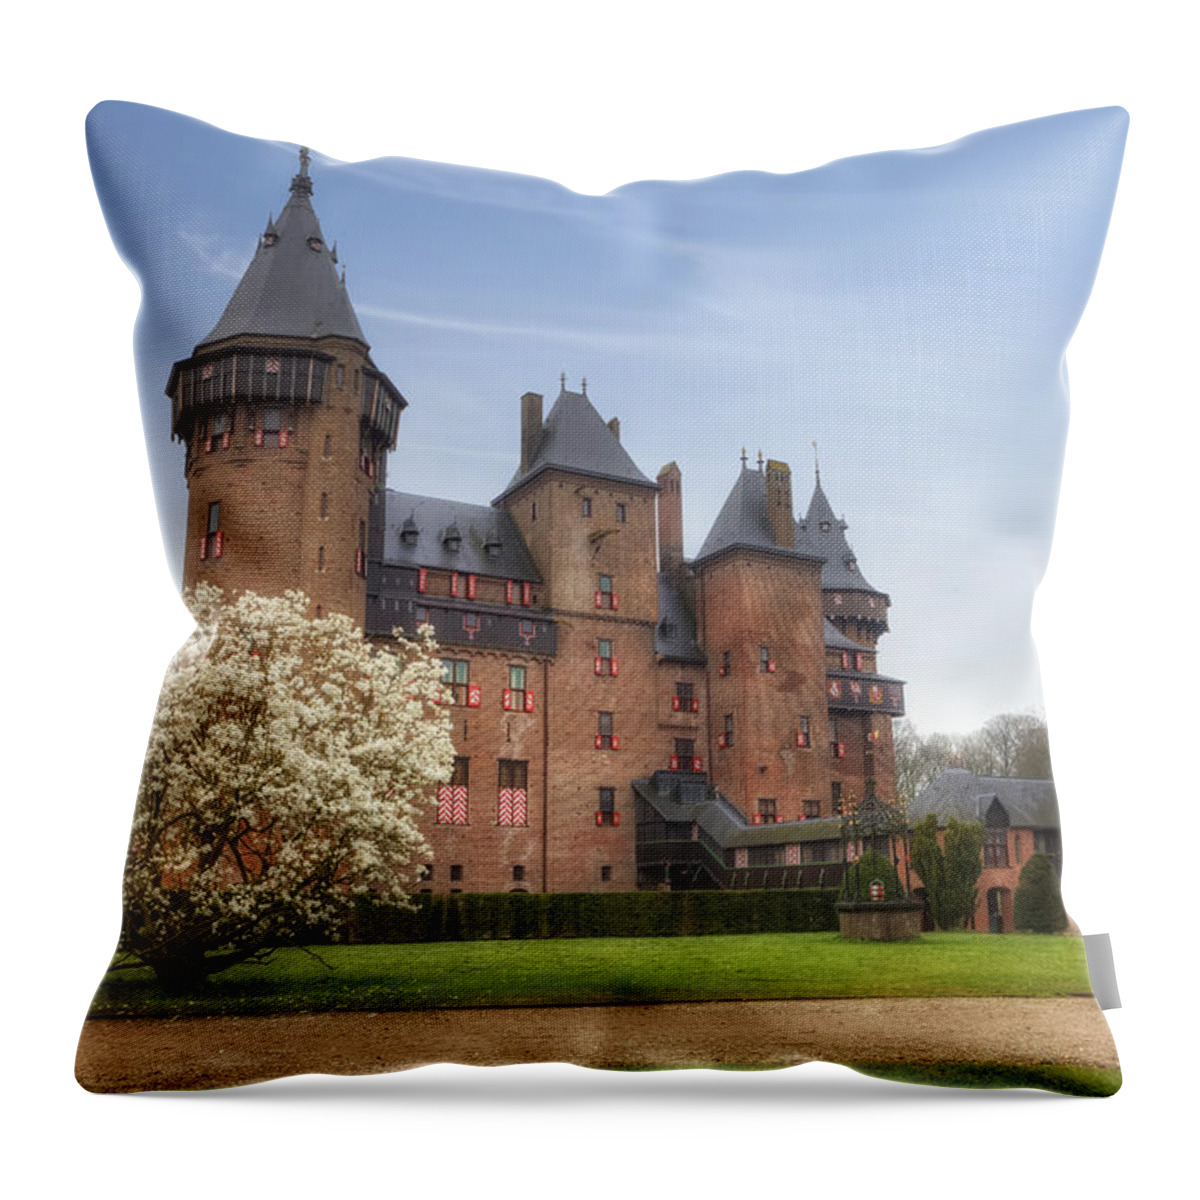 Castle De Haar Throw Pillow featuring the photograph Kasteel de Haar #1 by Joana Kruse